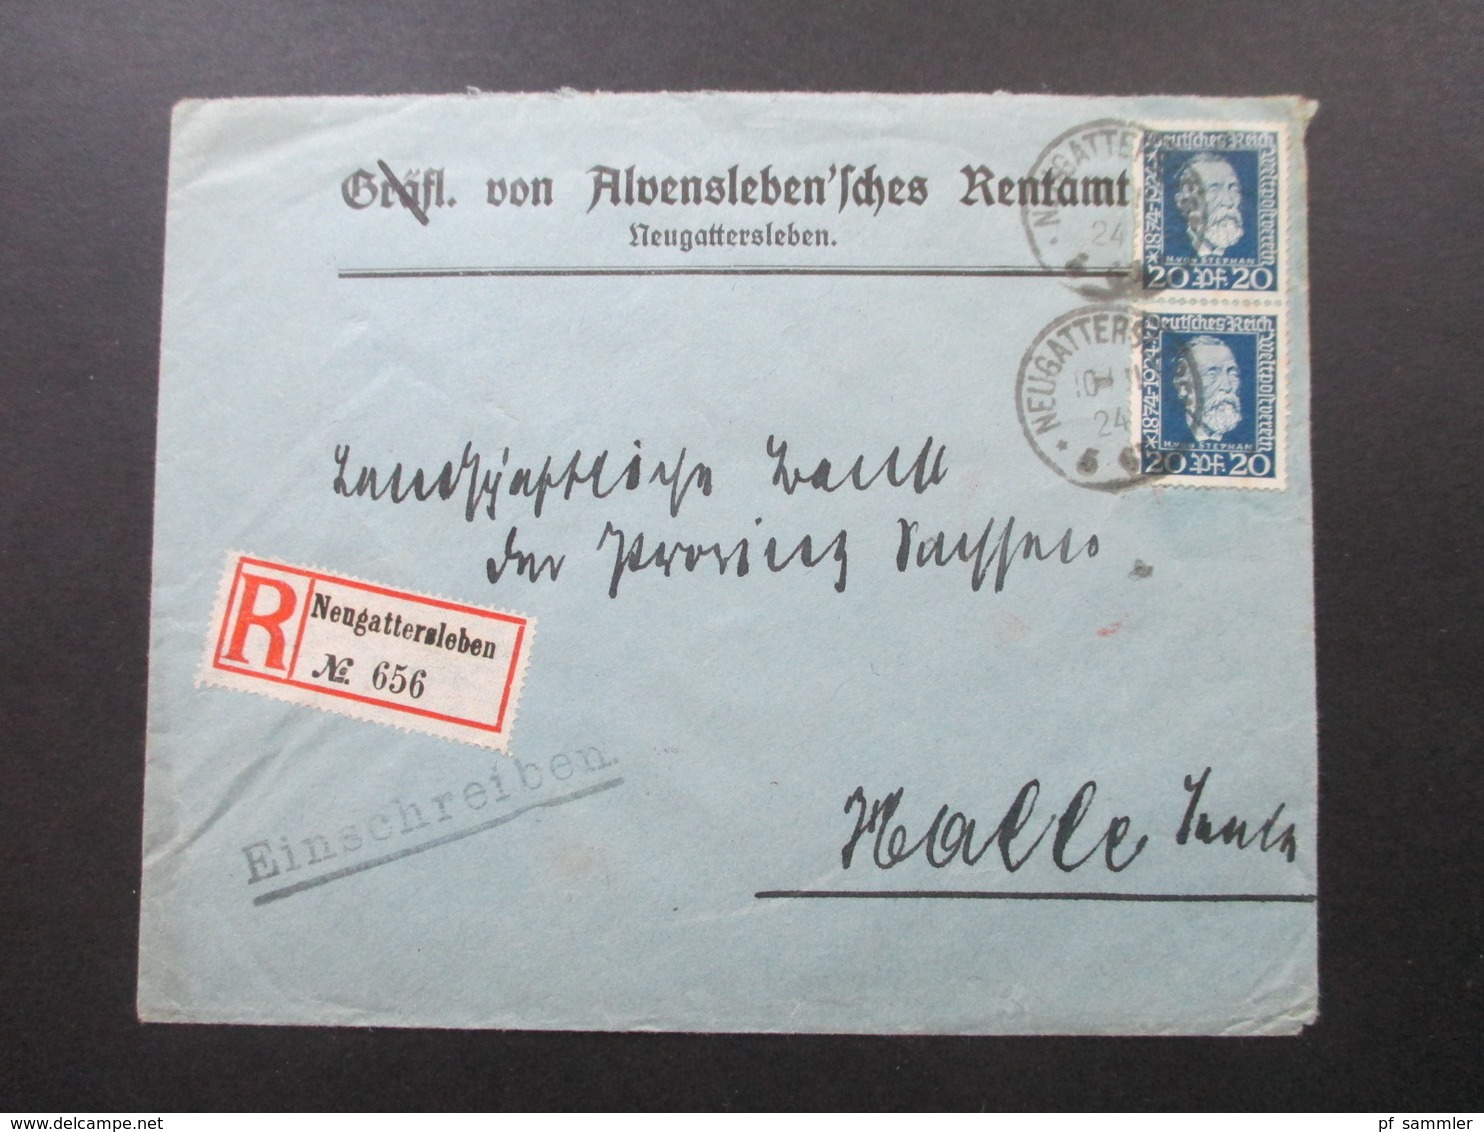 DR 1924 50 Jahre Weltpostverein Nr. 369 MeF Einschreiben Neugattersleben No 656 Gräfl. Von Alvensleben'sches Rentenamt - Briefe U. Dokumente